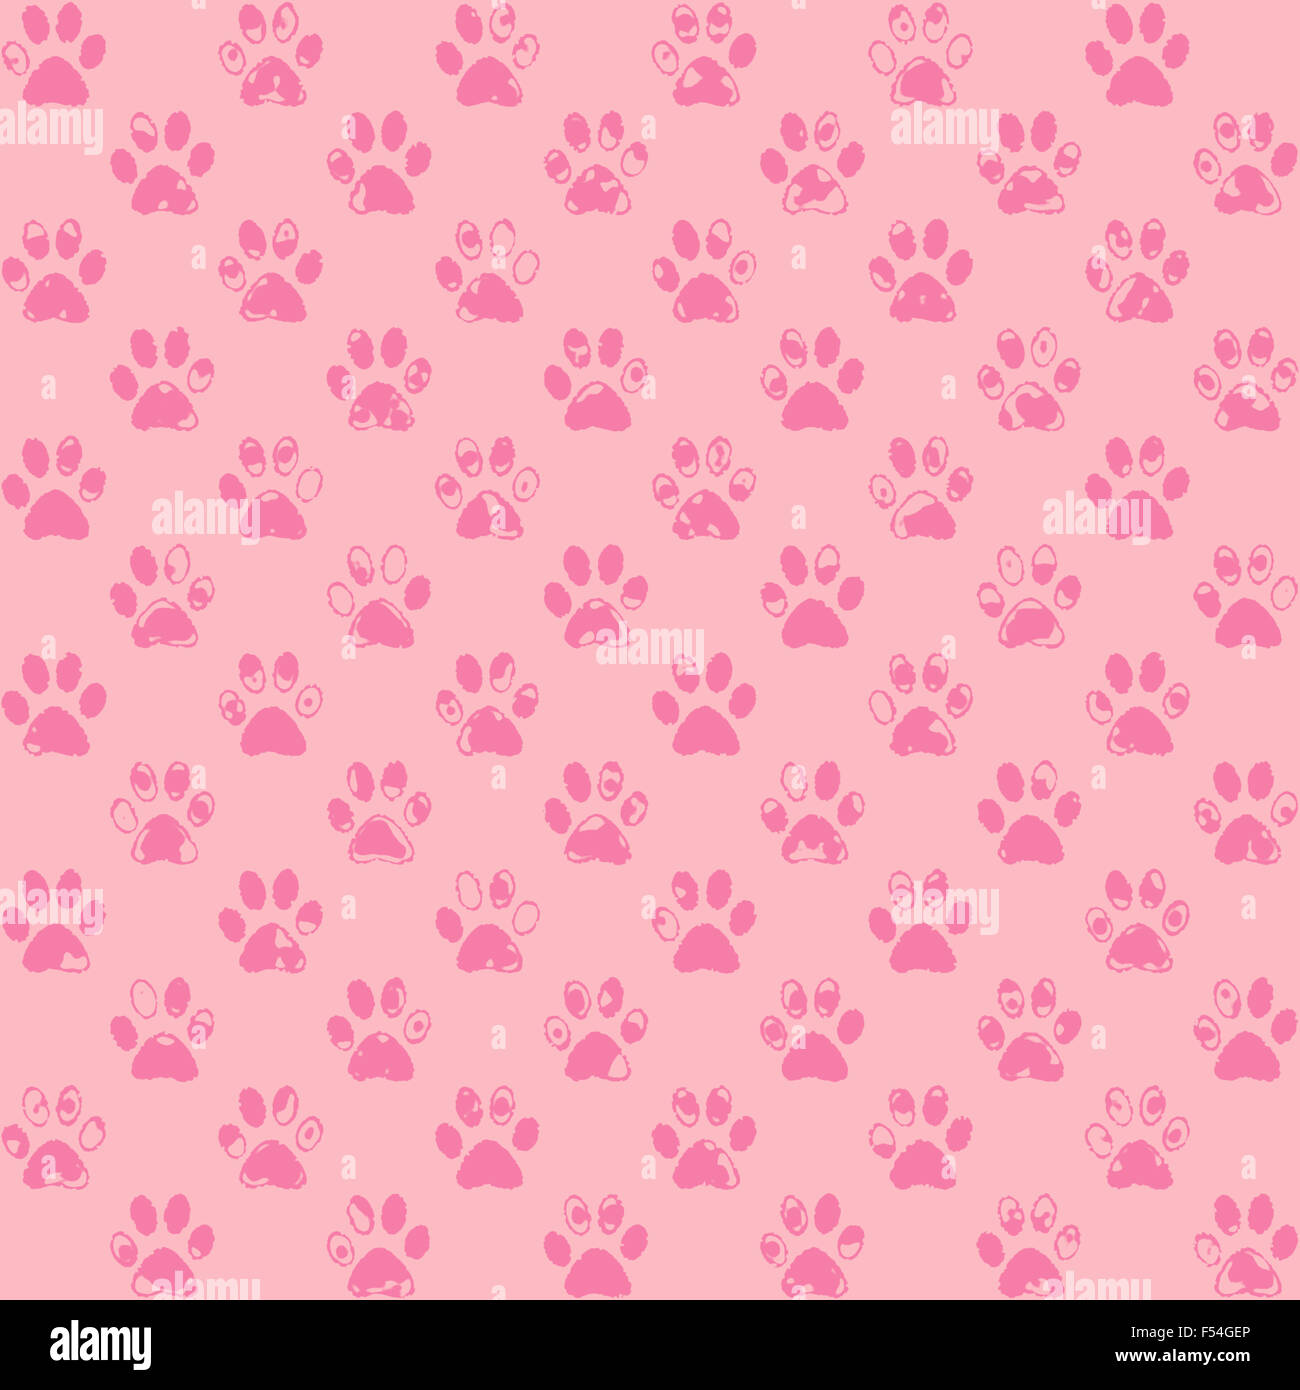 Gesprühte Pfotenabdrücke in rosa, dunkel auf leichtere, eine nahtlose Hintergrundmuster Stockfoto